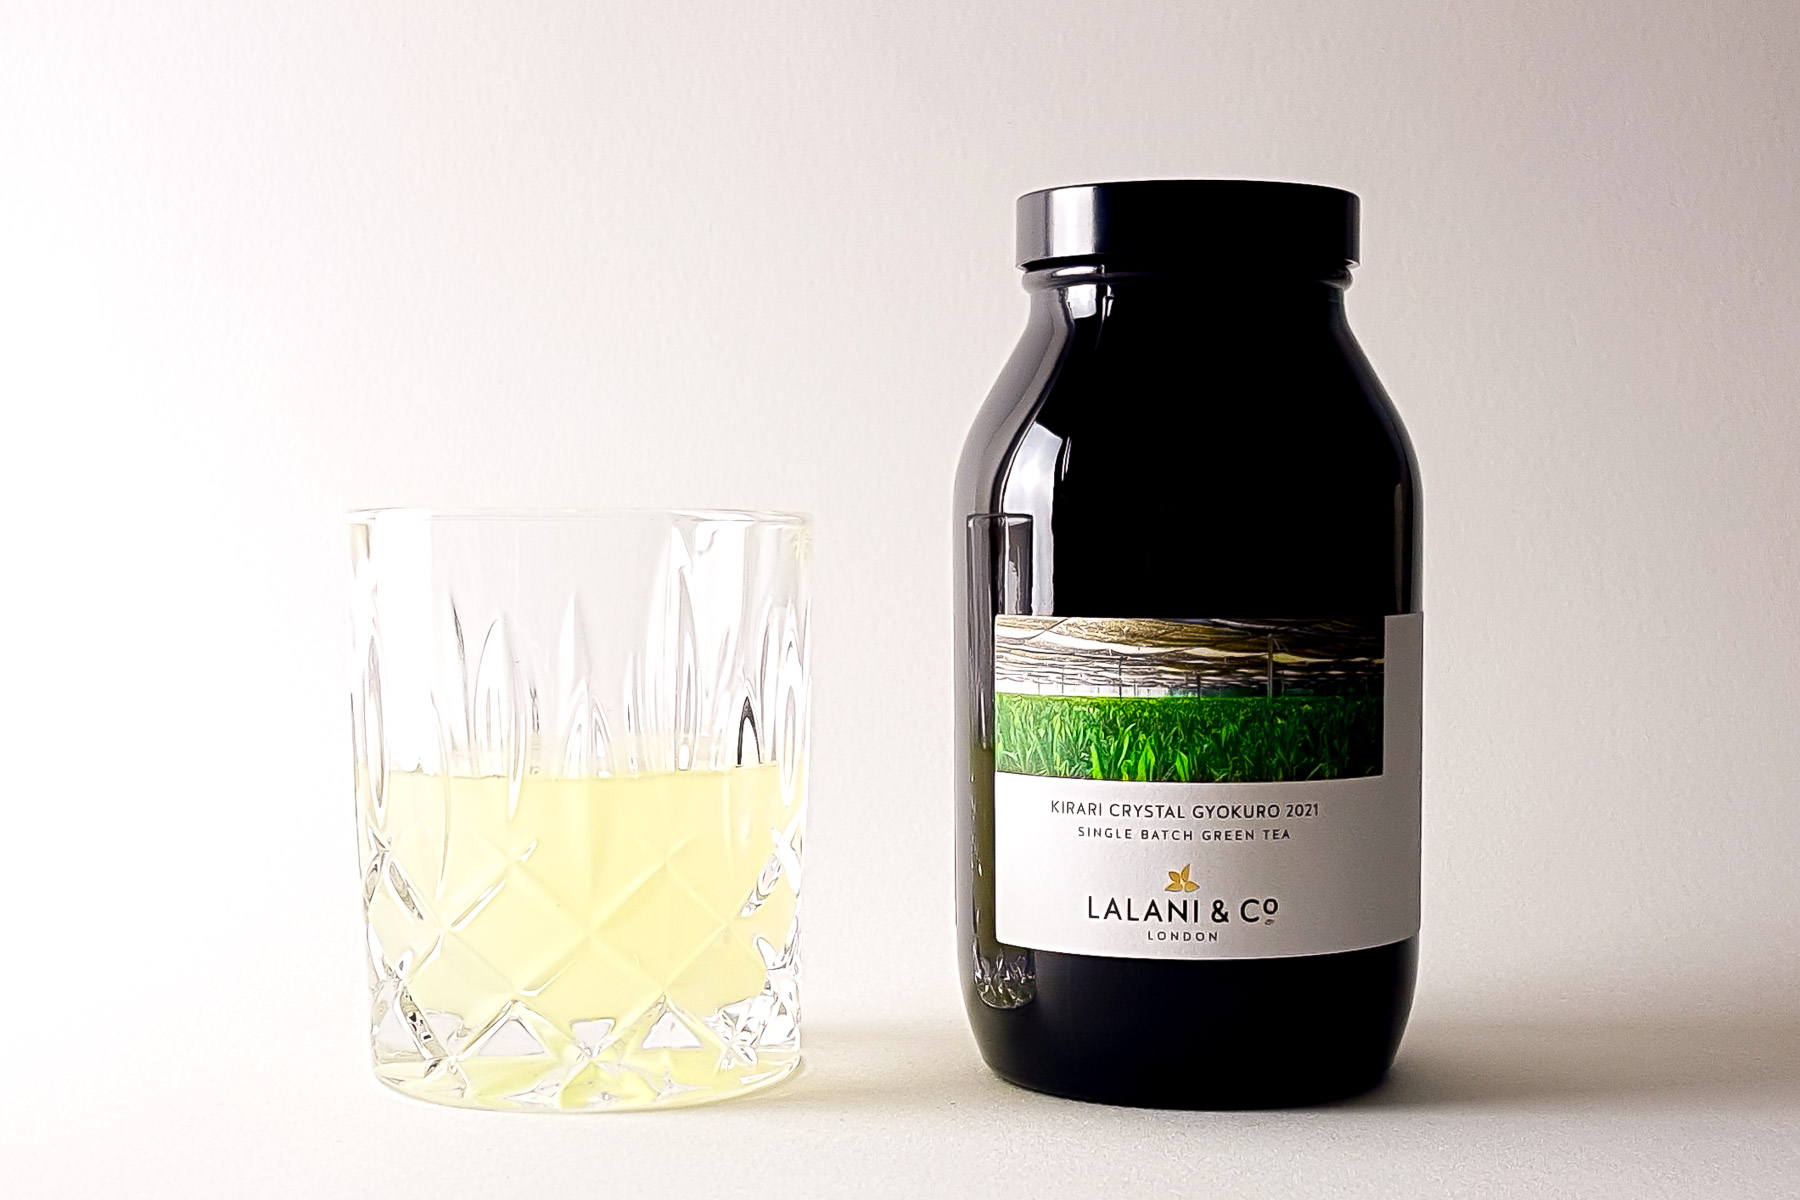 Lalani & Co: Organic Kirari Crystal Gyokuro Green Tea